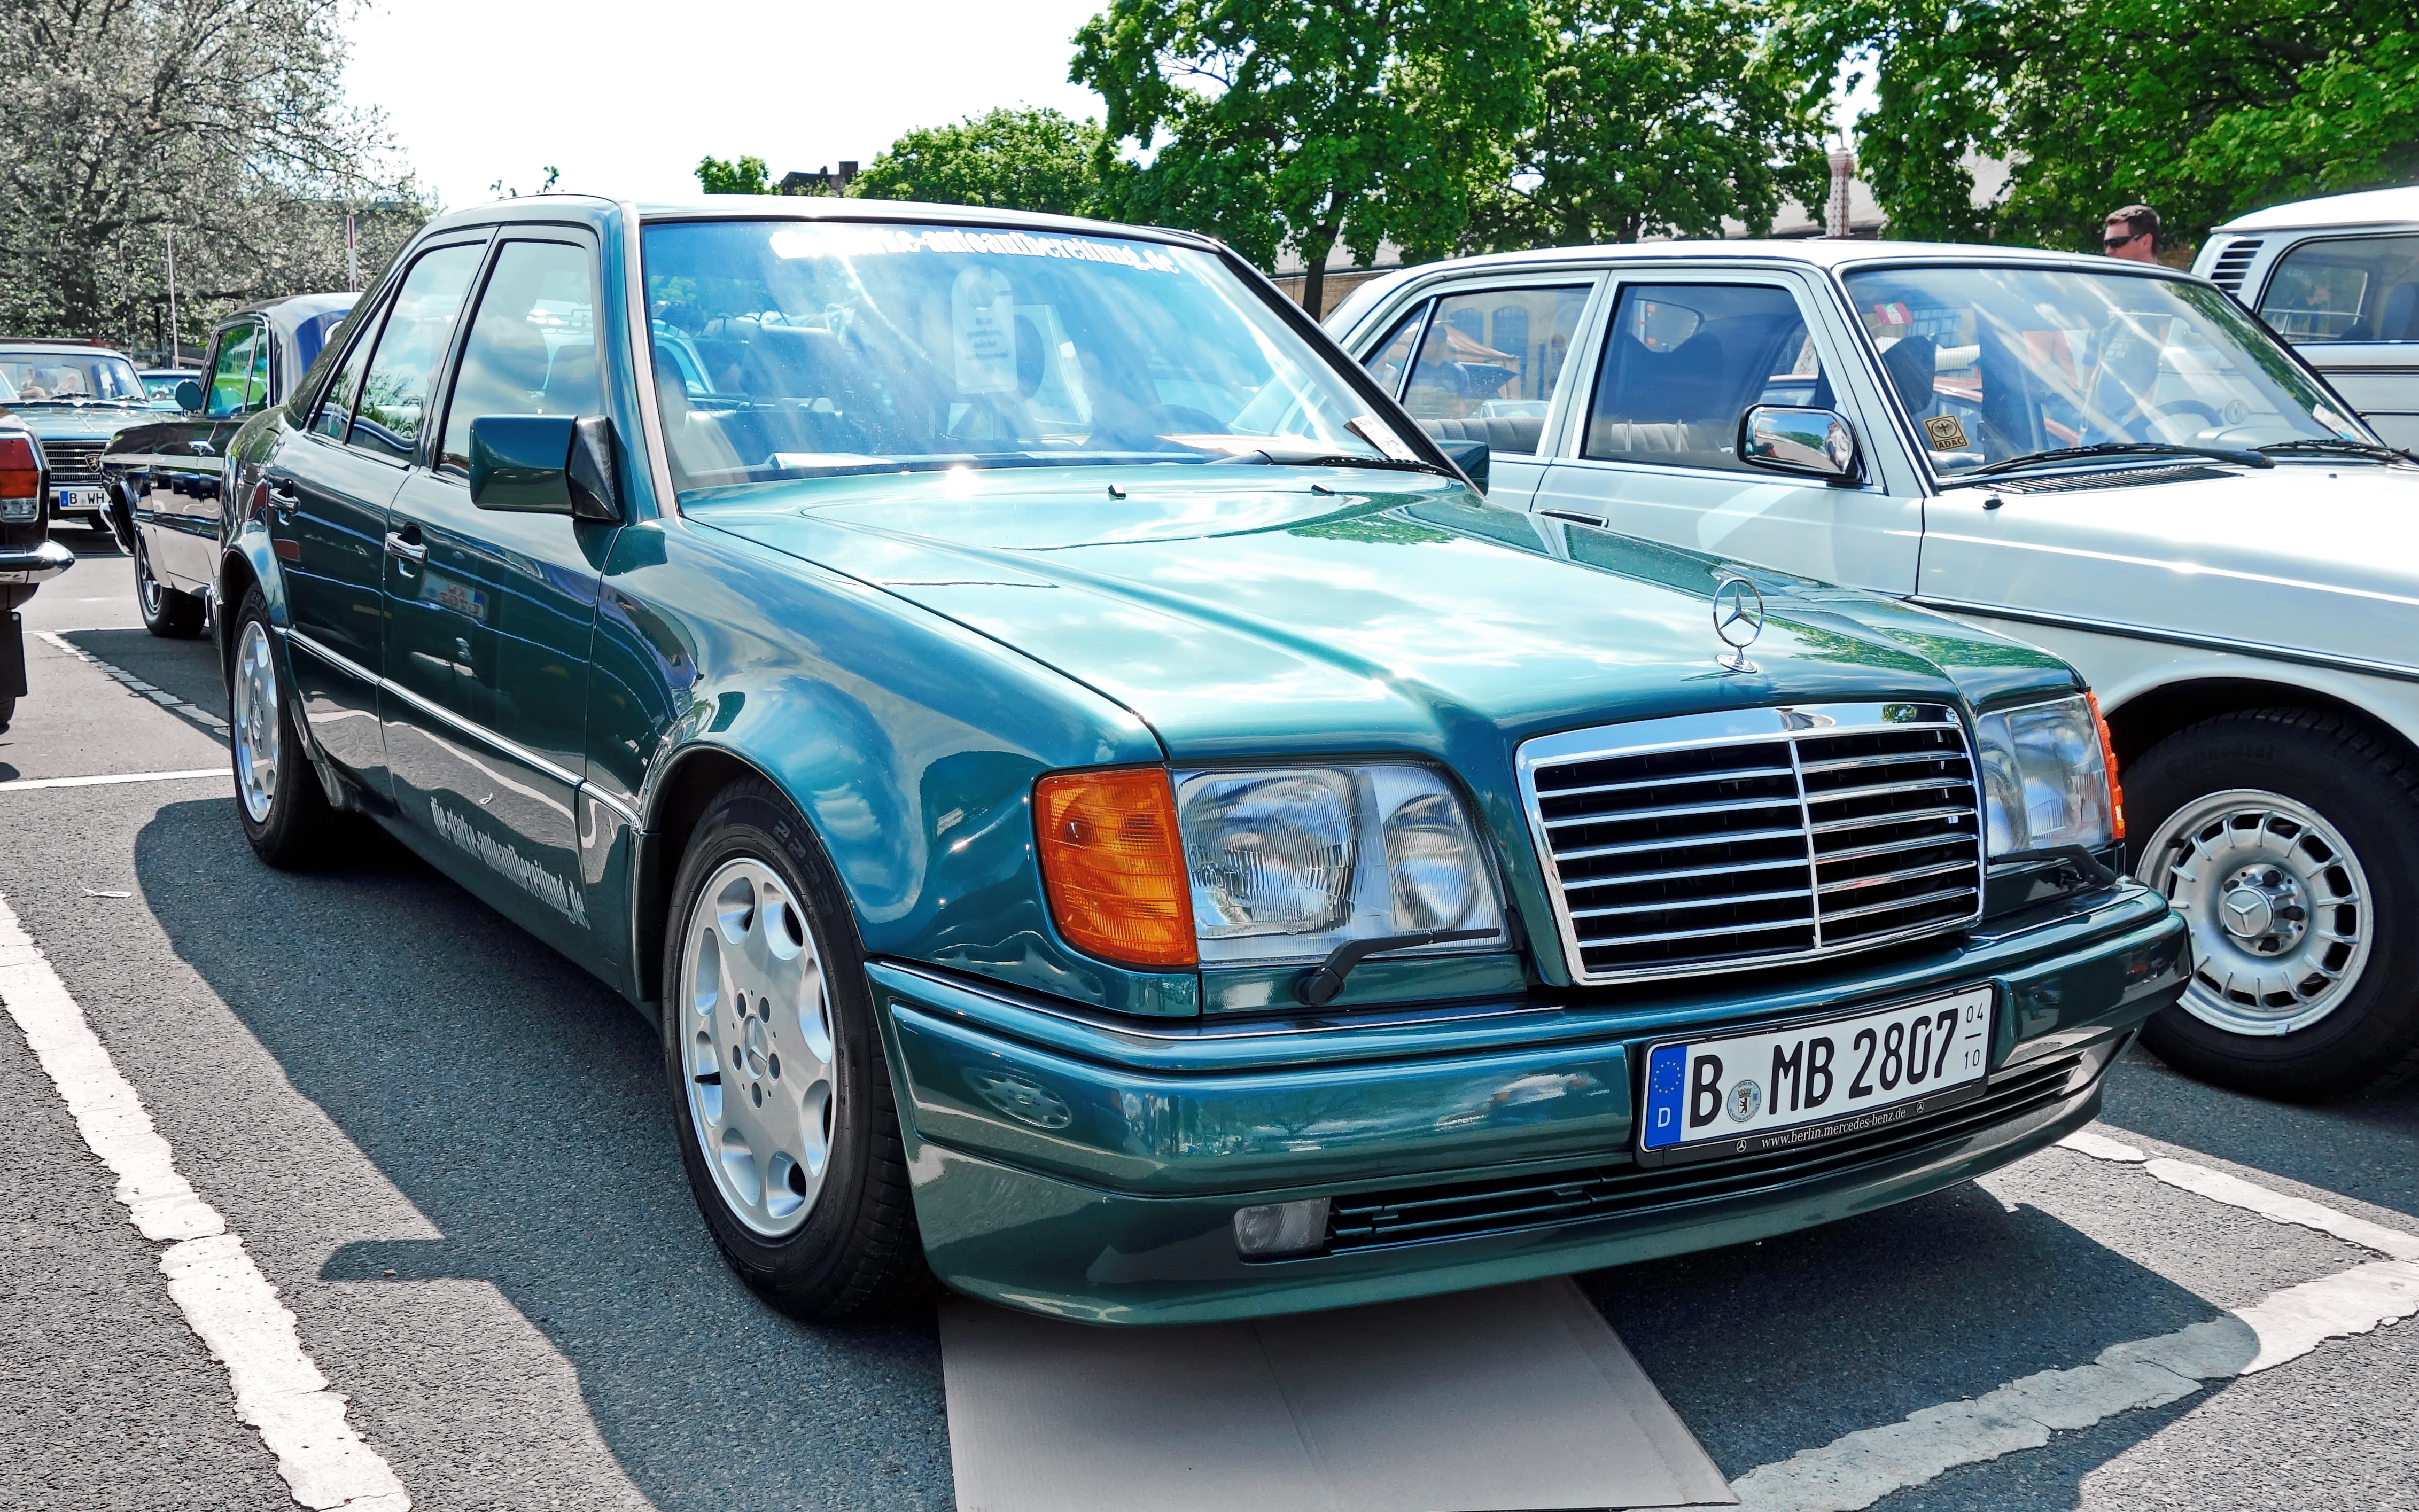 Машина за 300: Подержанный автомобиль за 300 тысяч рублей | Статьи